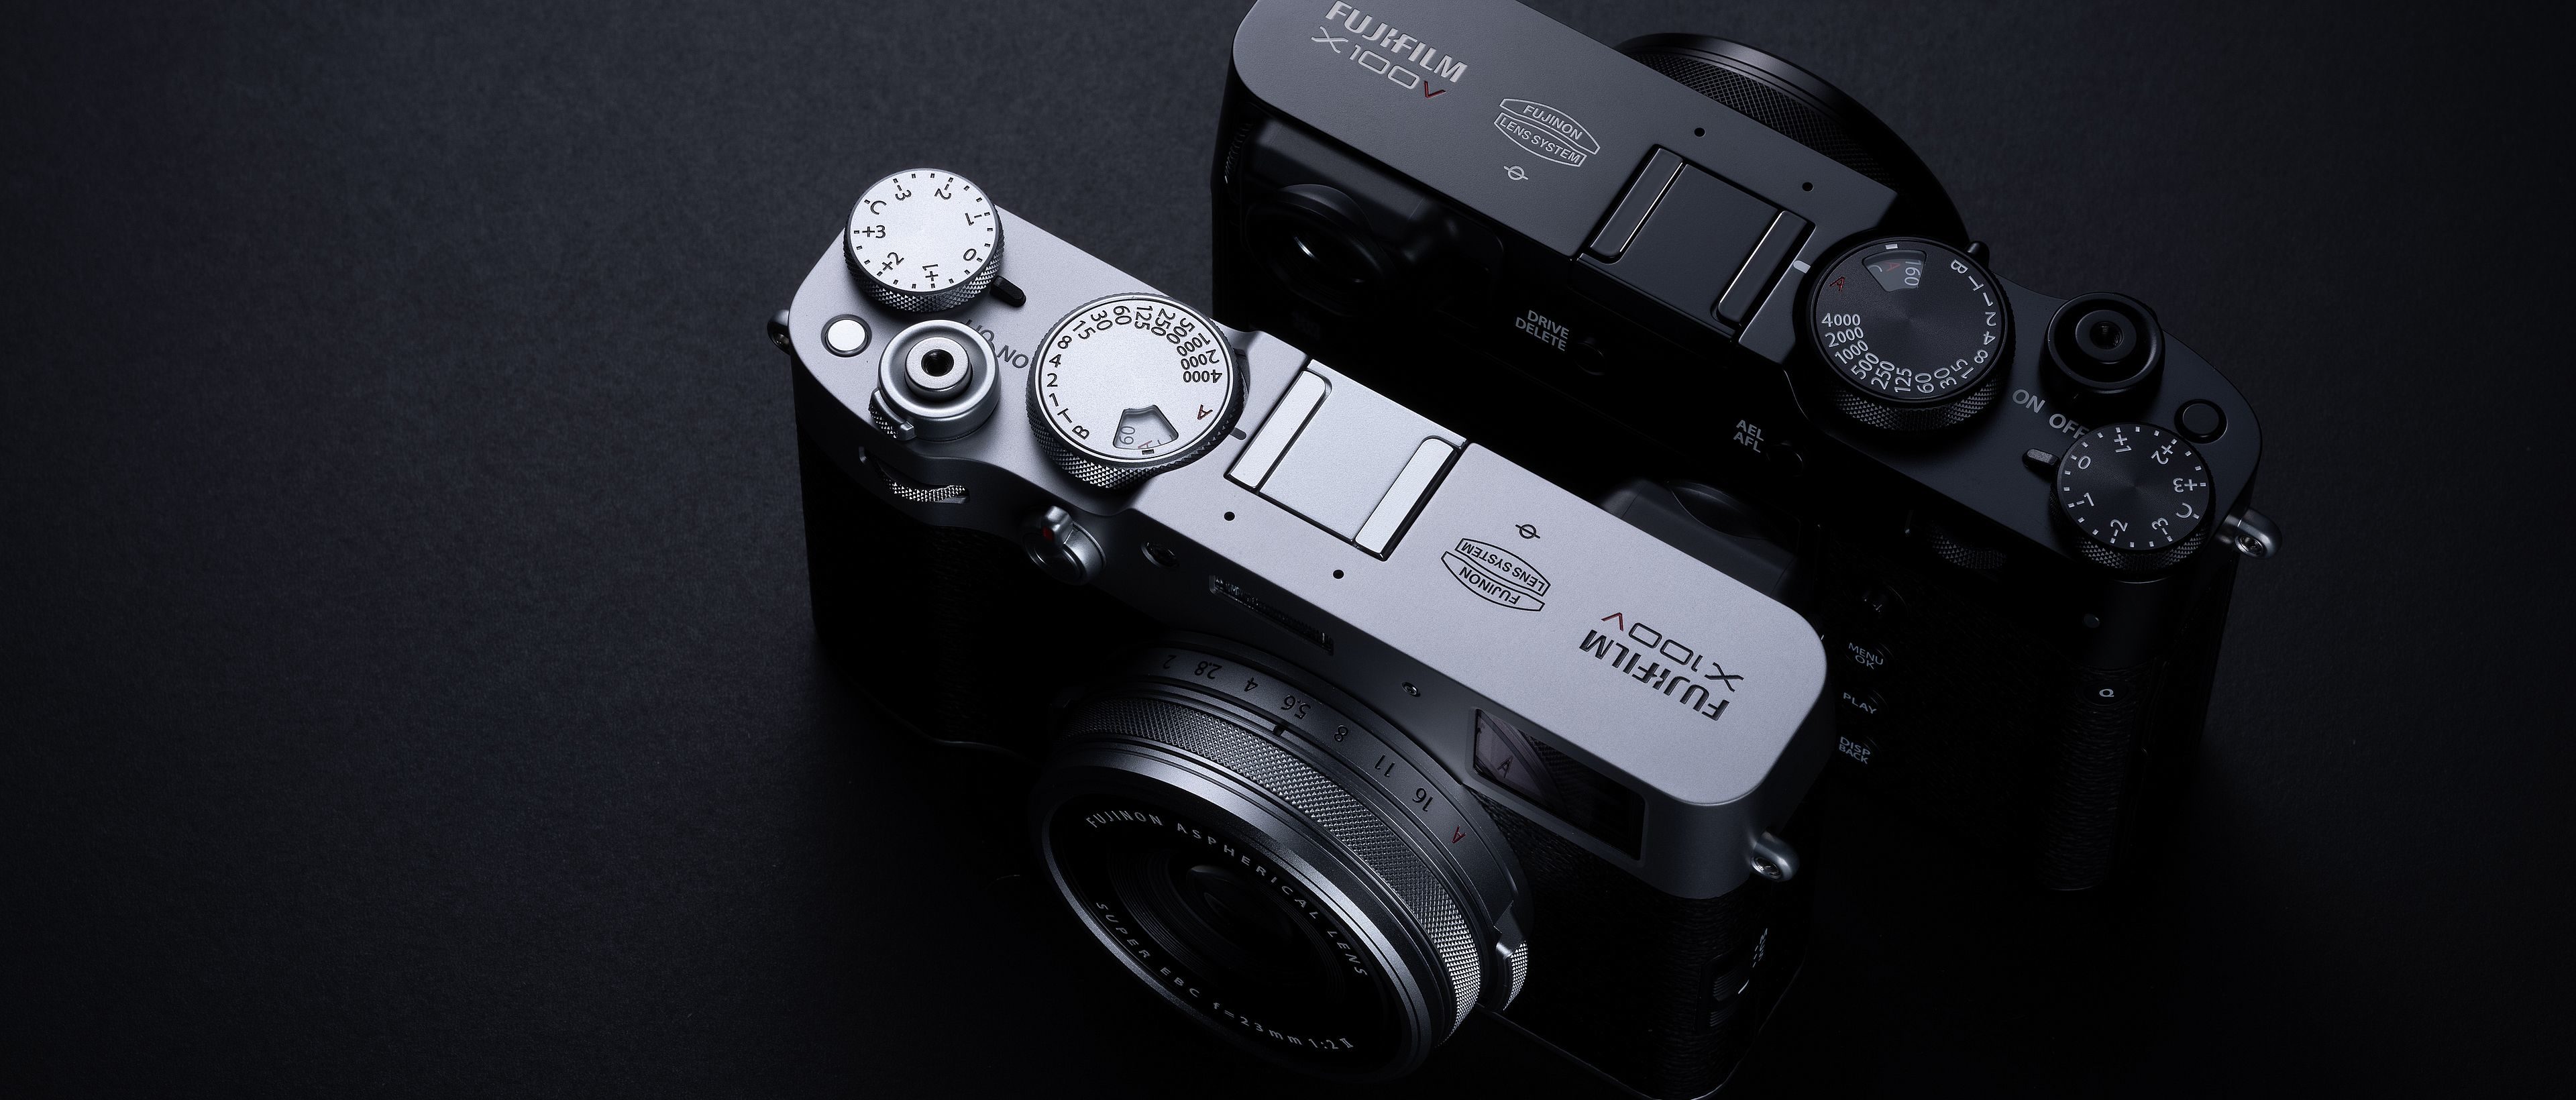 Preview Image: Fujifilm X100 V